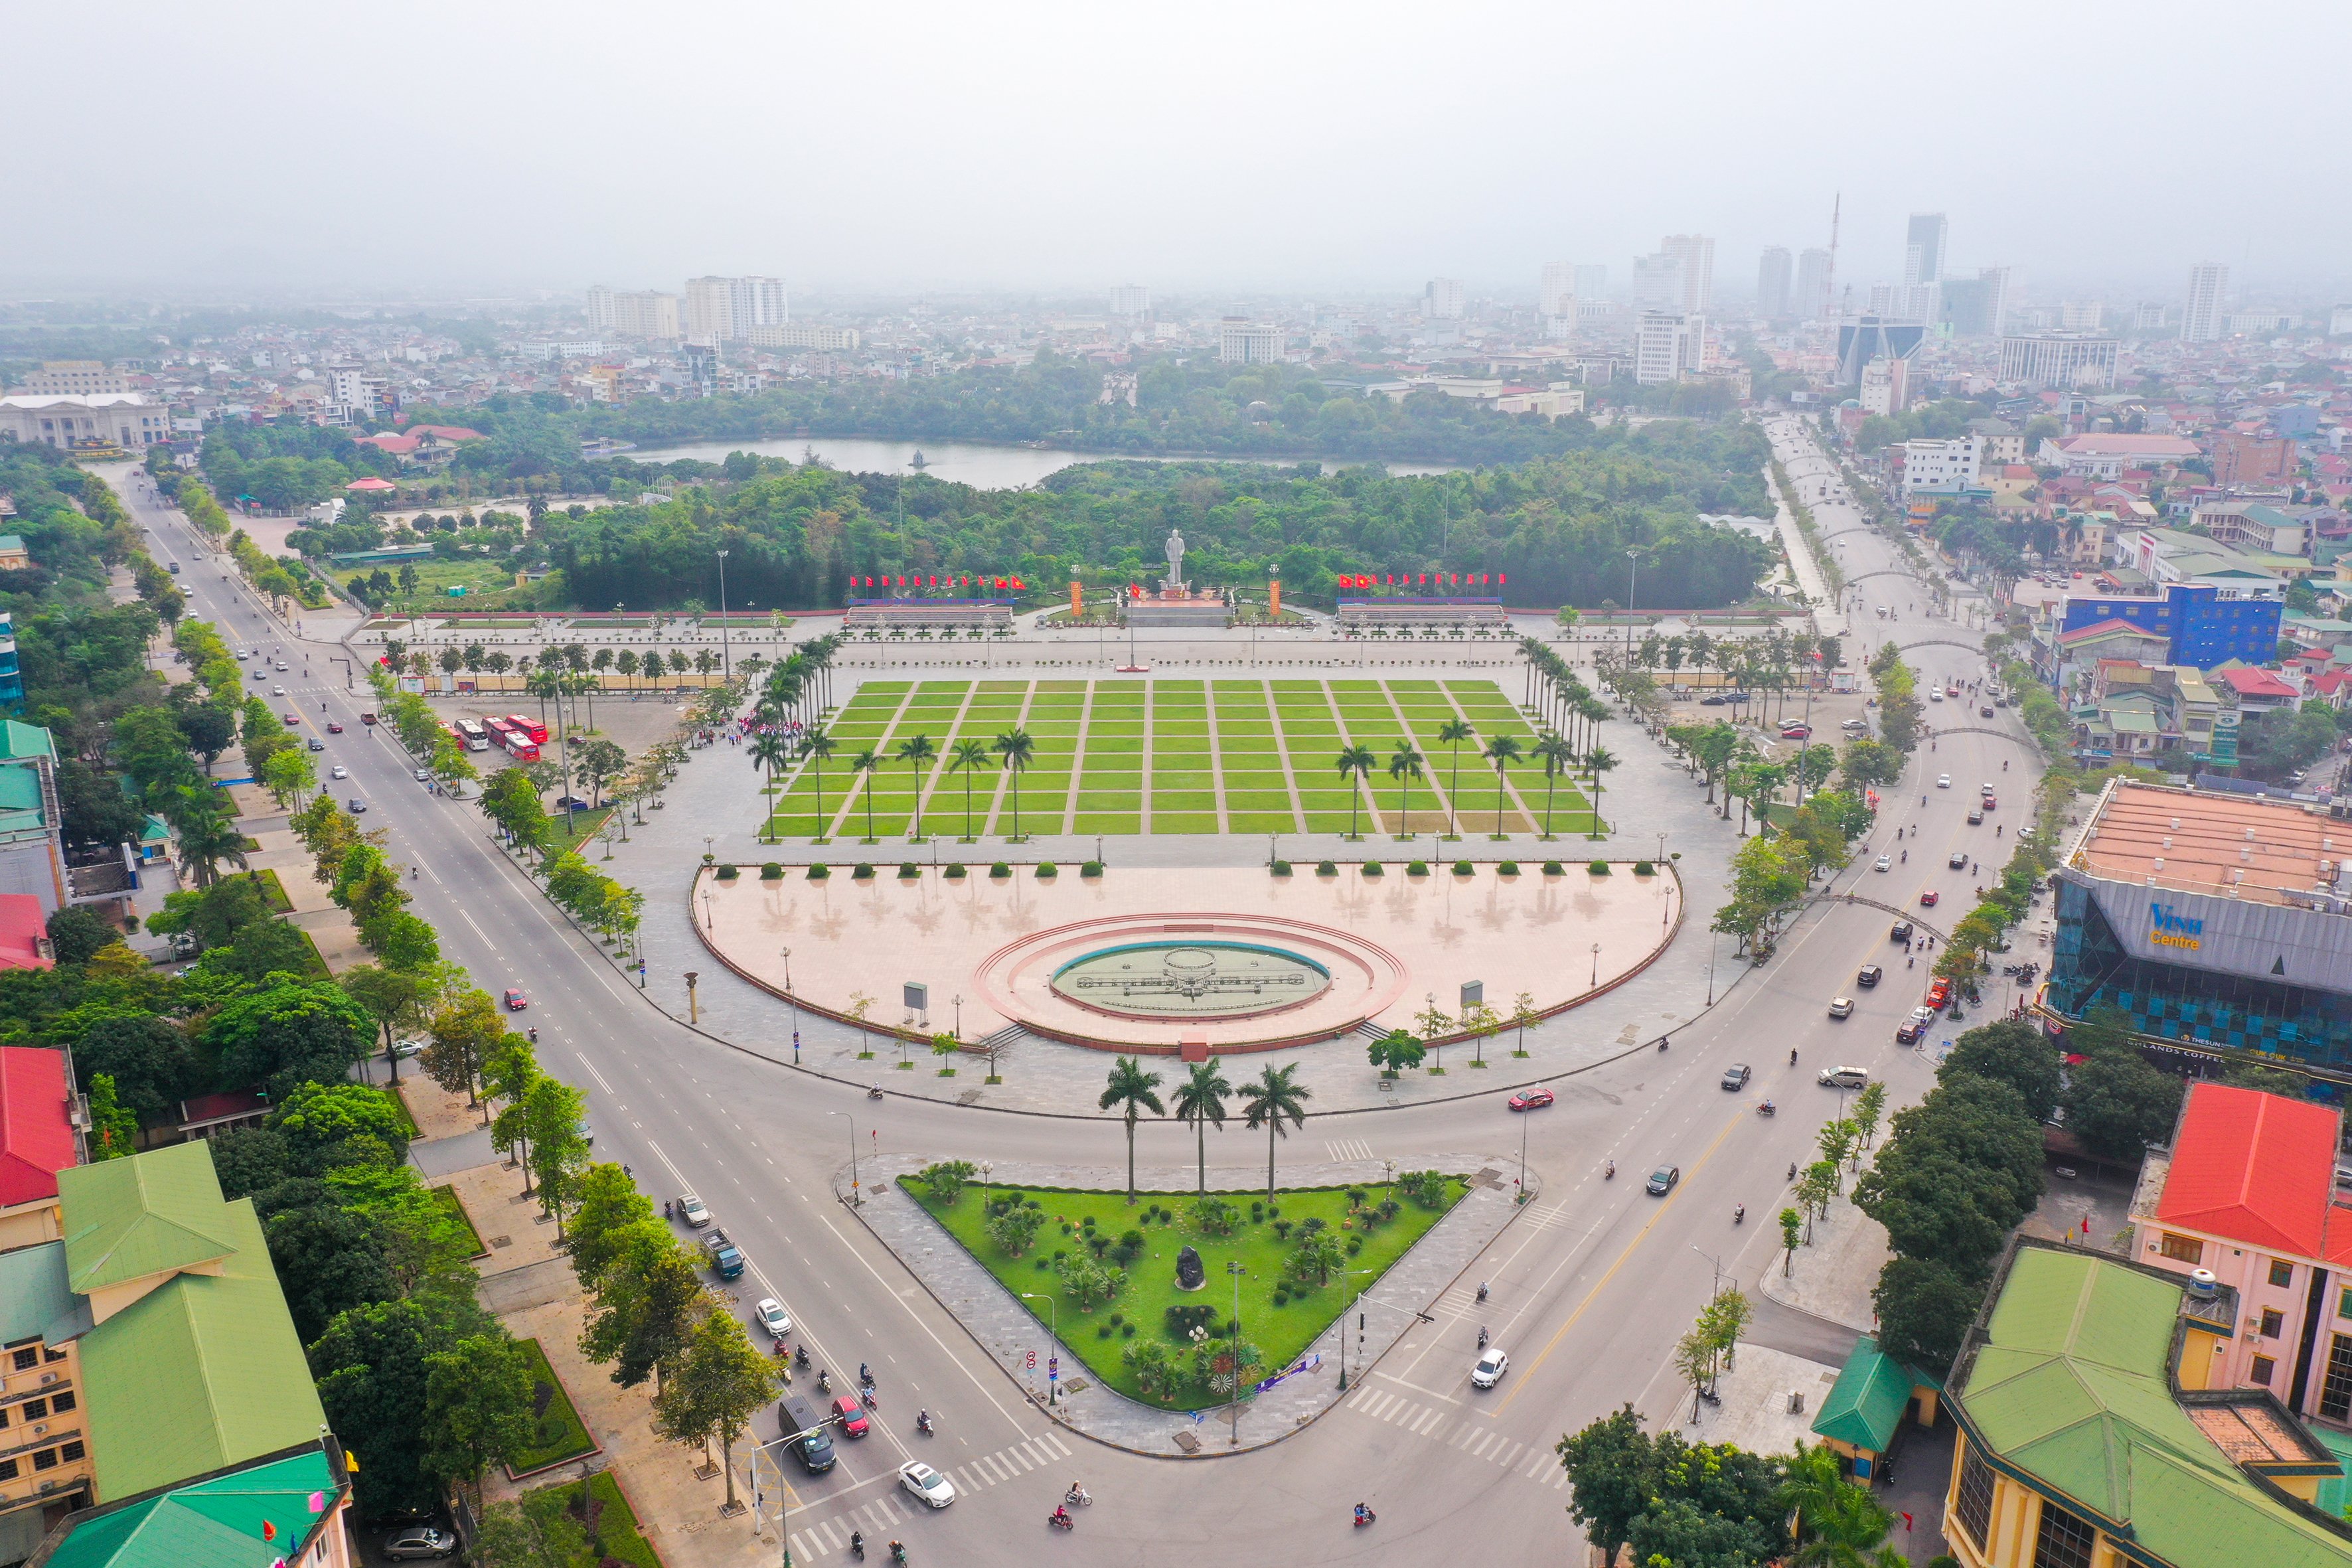 Quảng trường Hồ Chí Minh và Tượng đài Bác Hồ - 20 năm xây dựng và phát triển